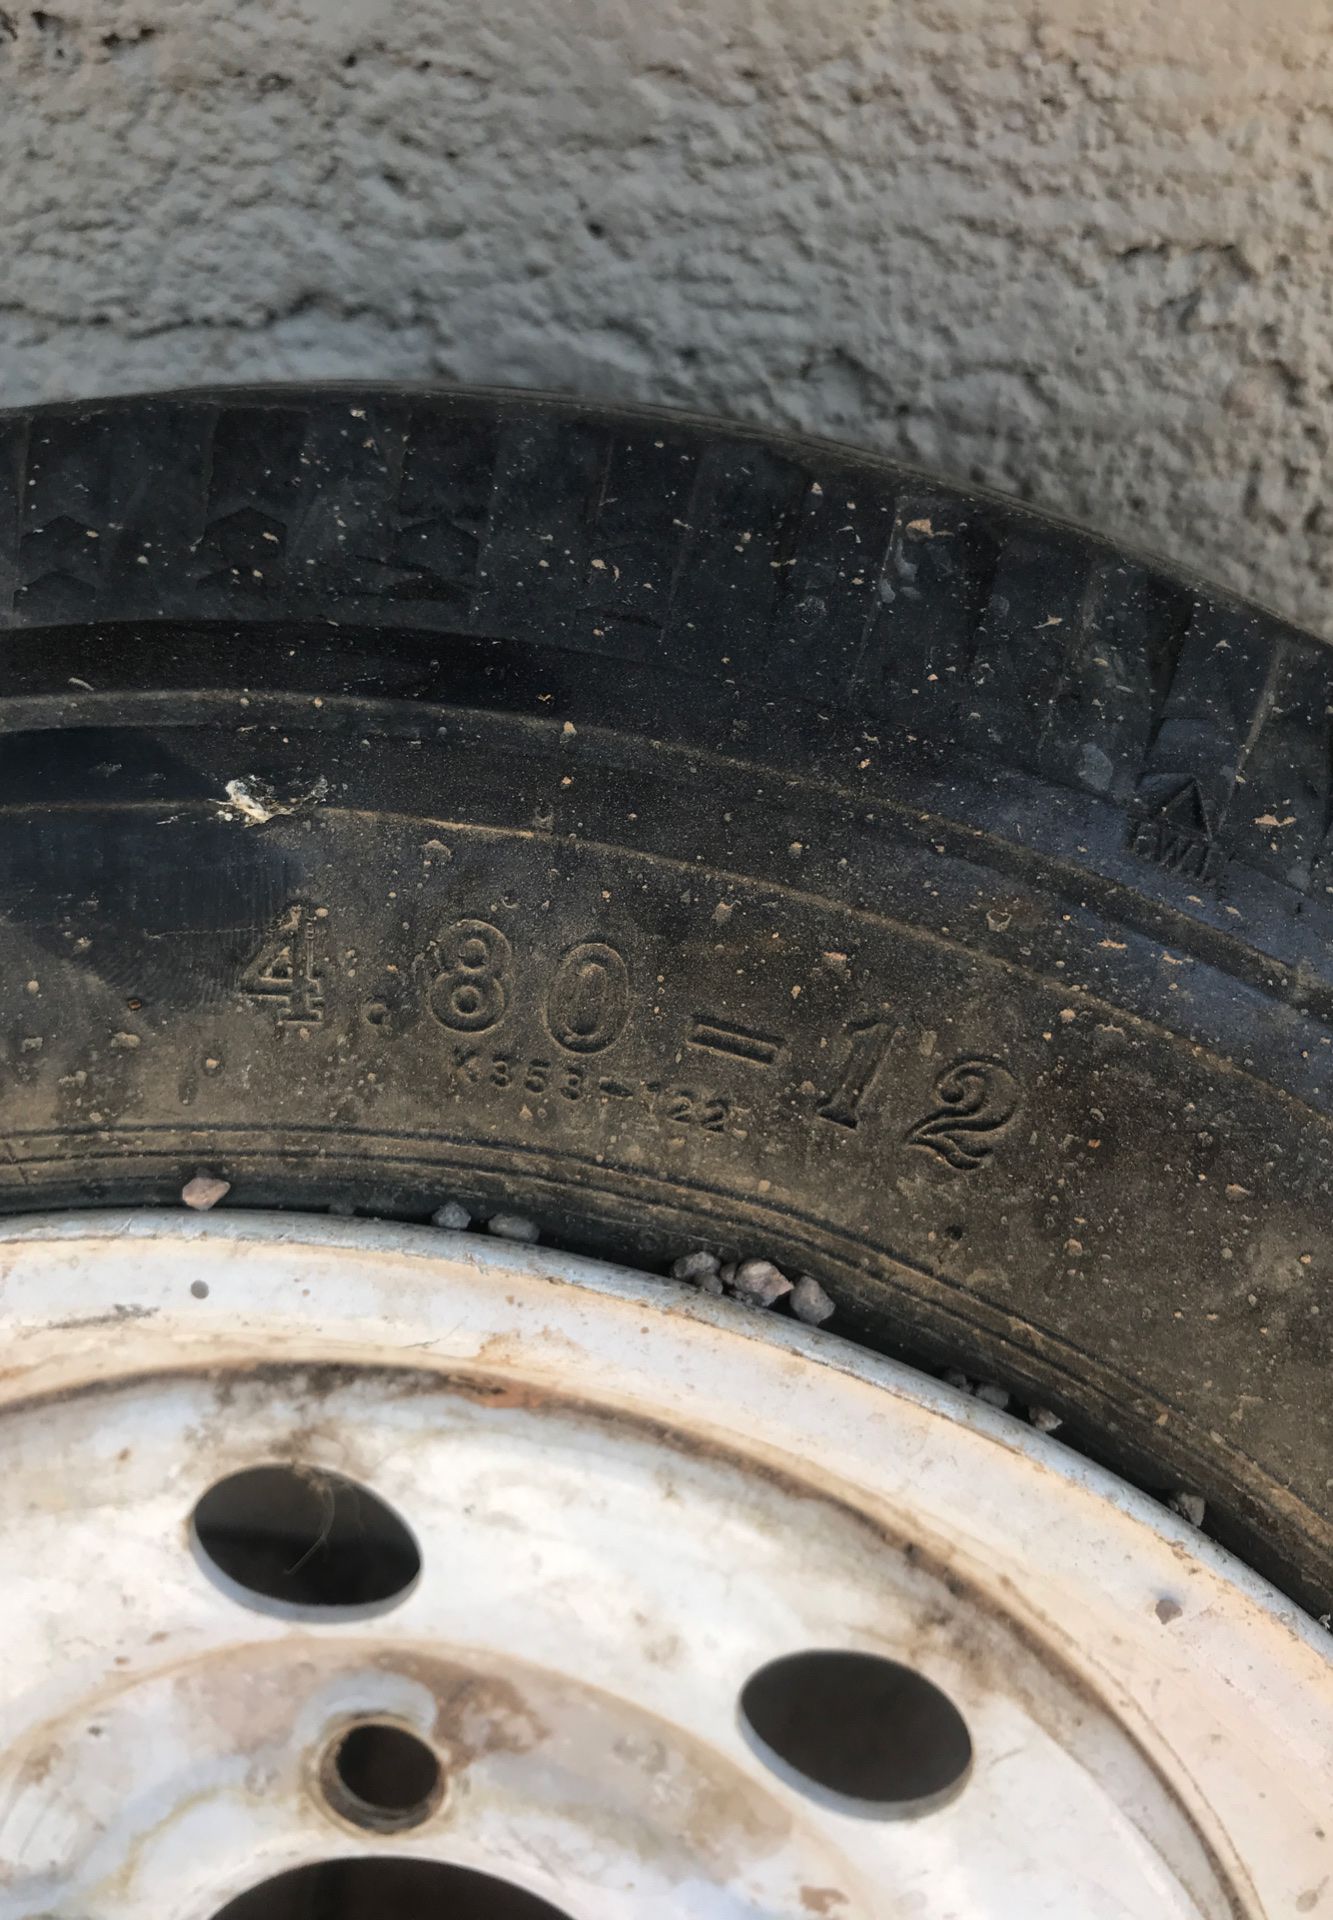 Spare trailer tire